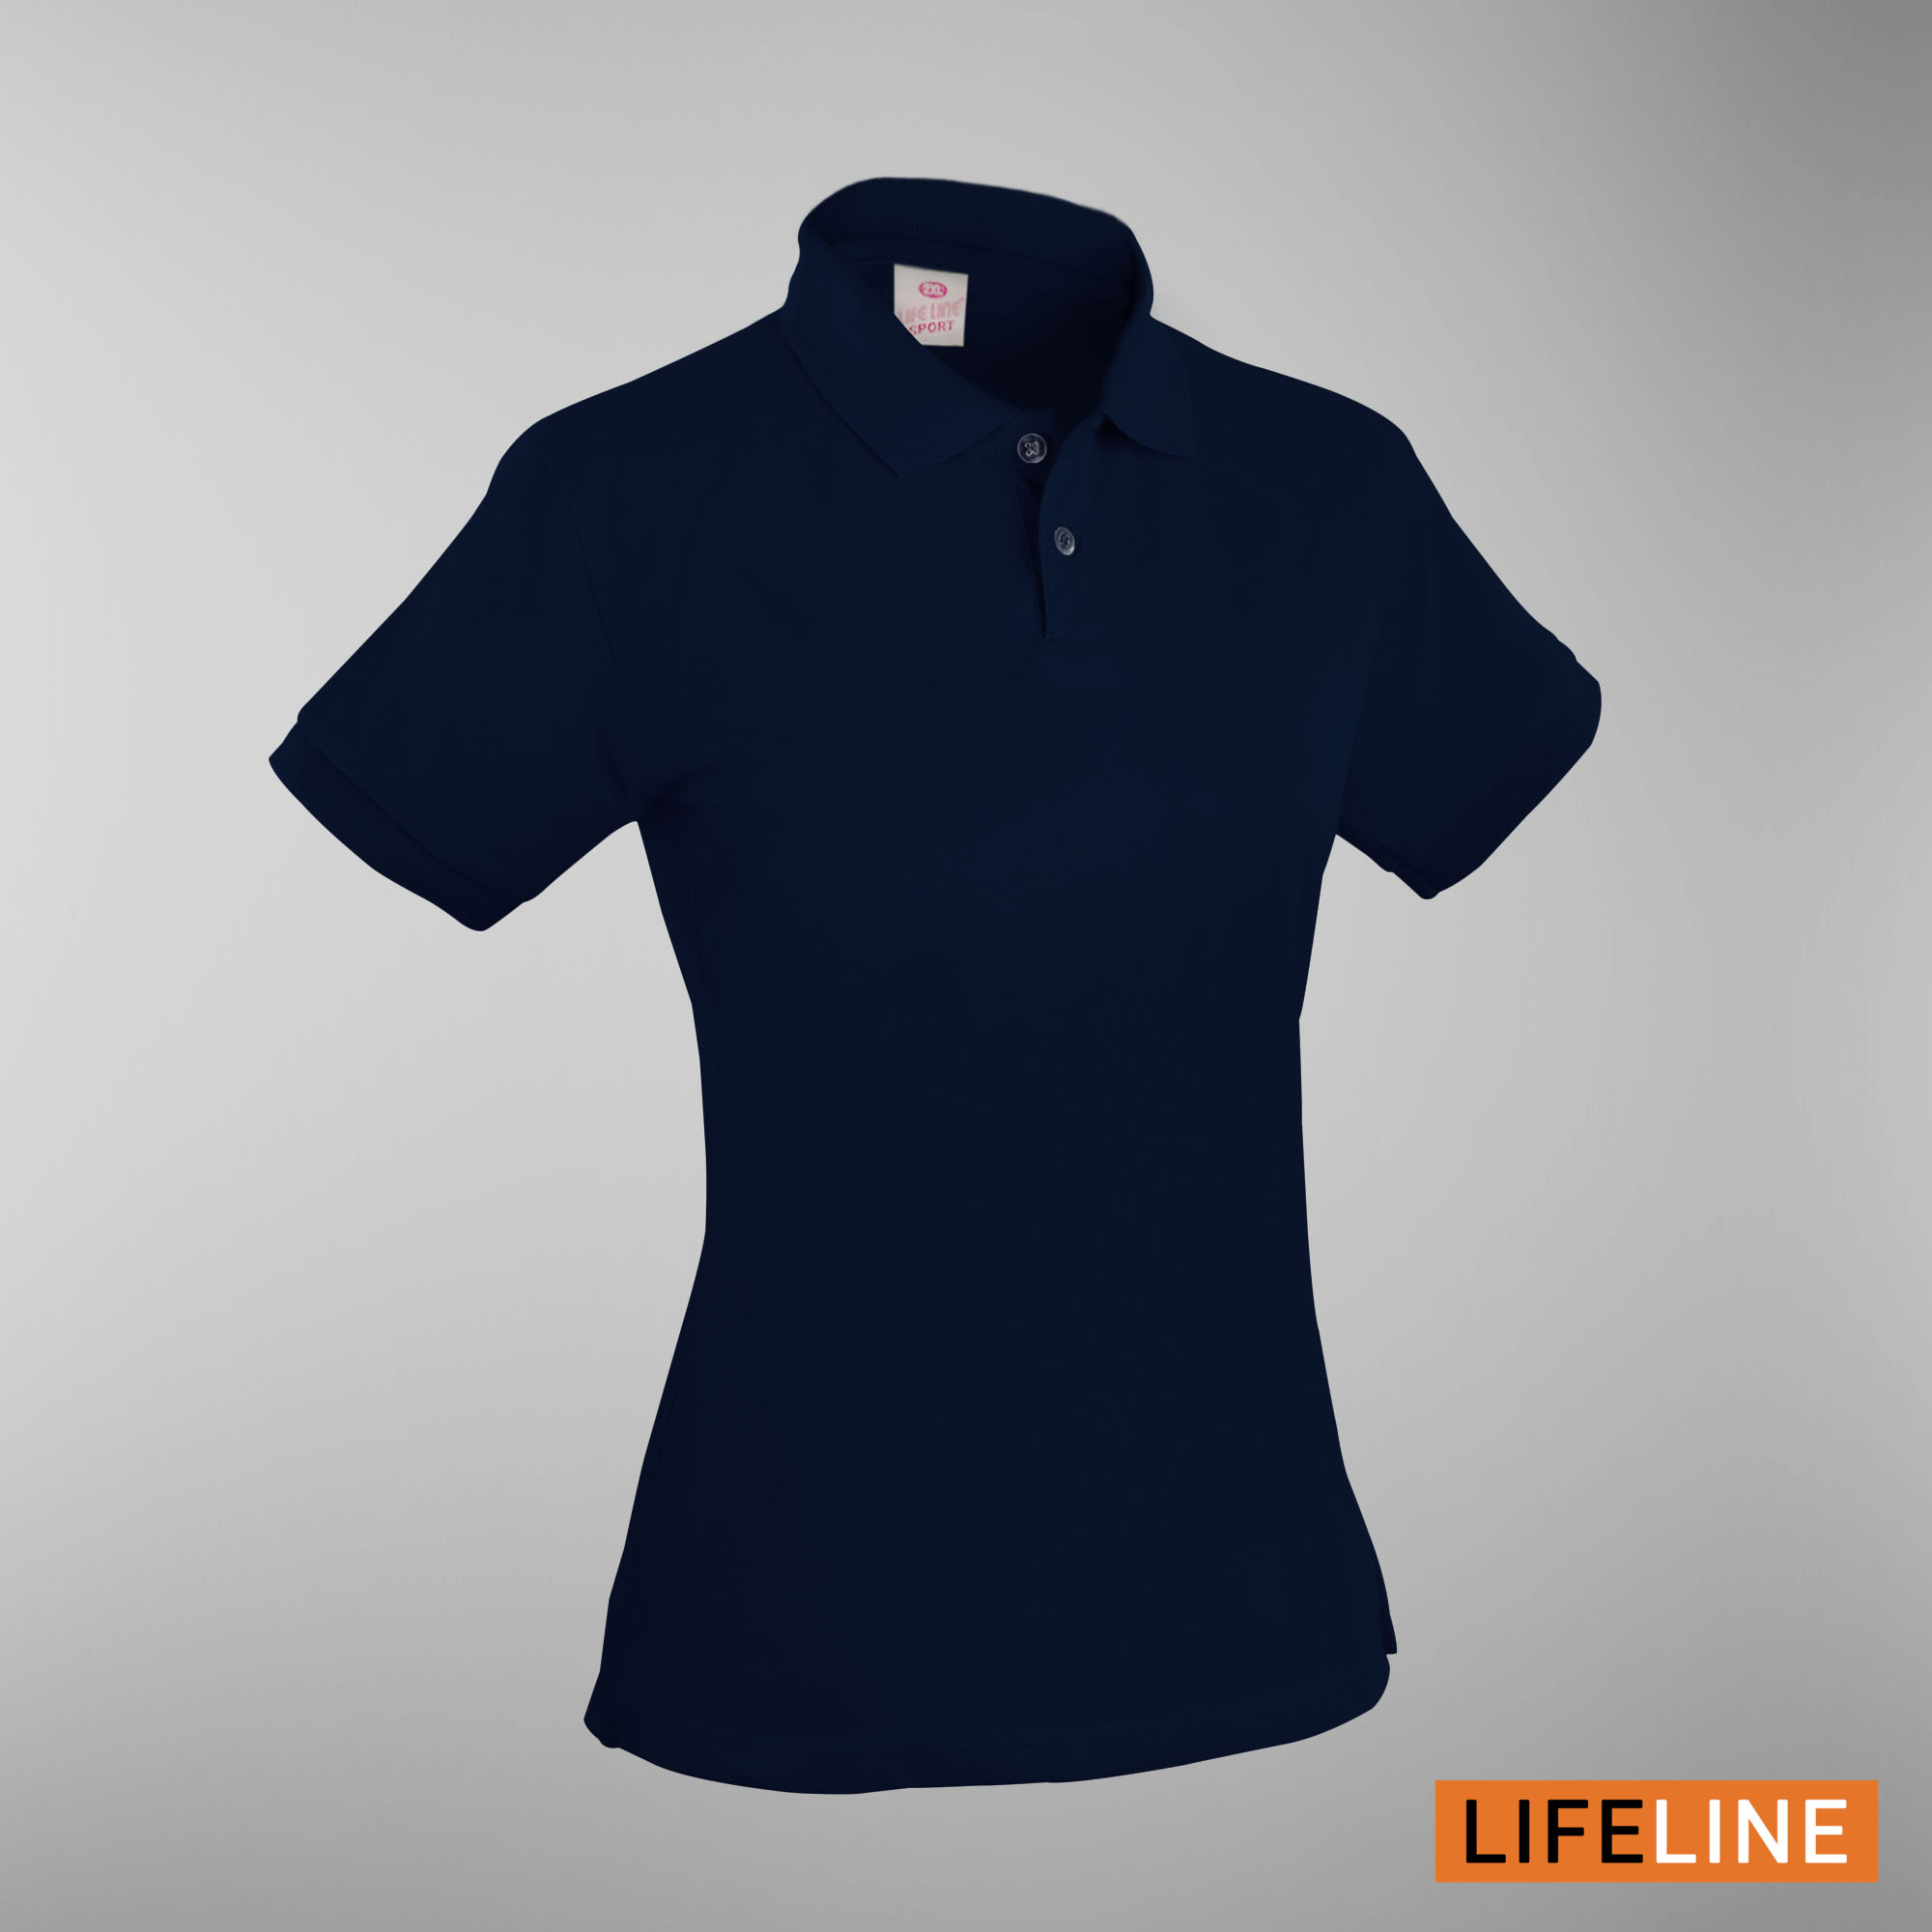 Lifeline Ladies’ Poloshirt (Navy Blue) (Petite Sizes)